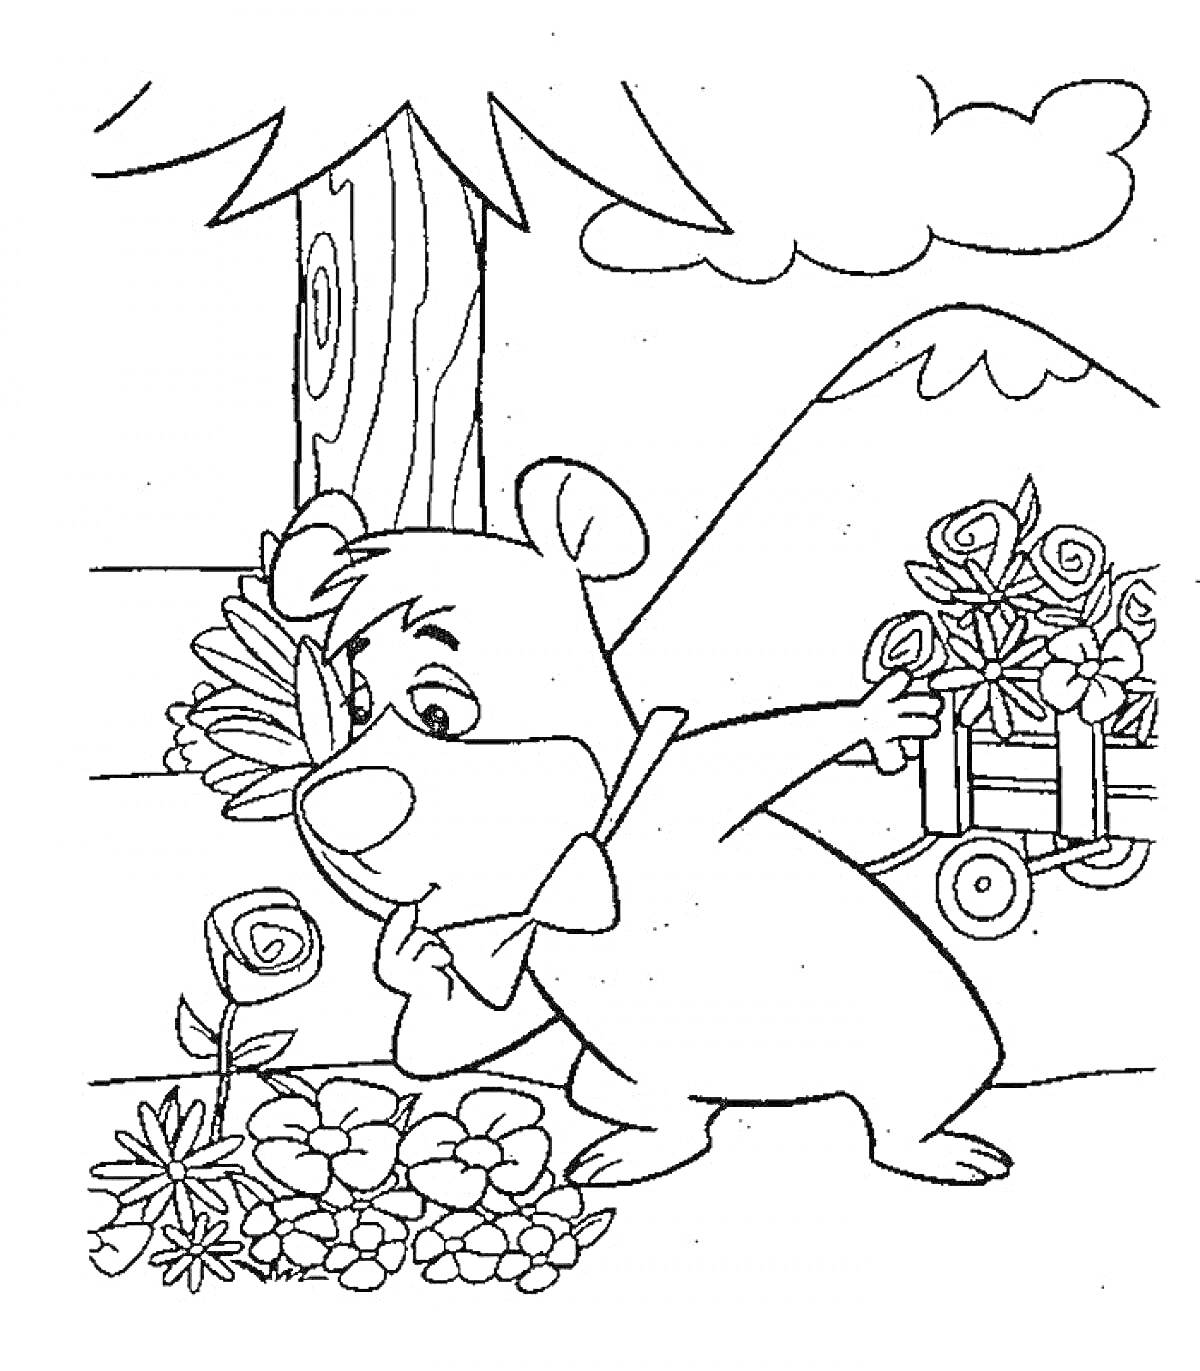 Медведь Йоги с тележкой цветов среди растений на фоне дерева, горы и облака